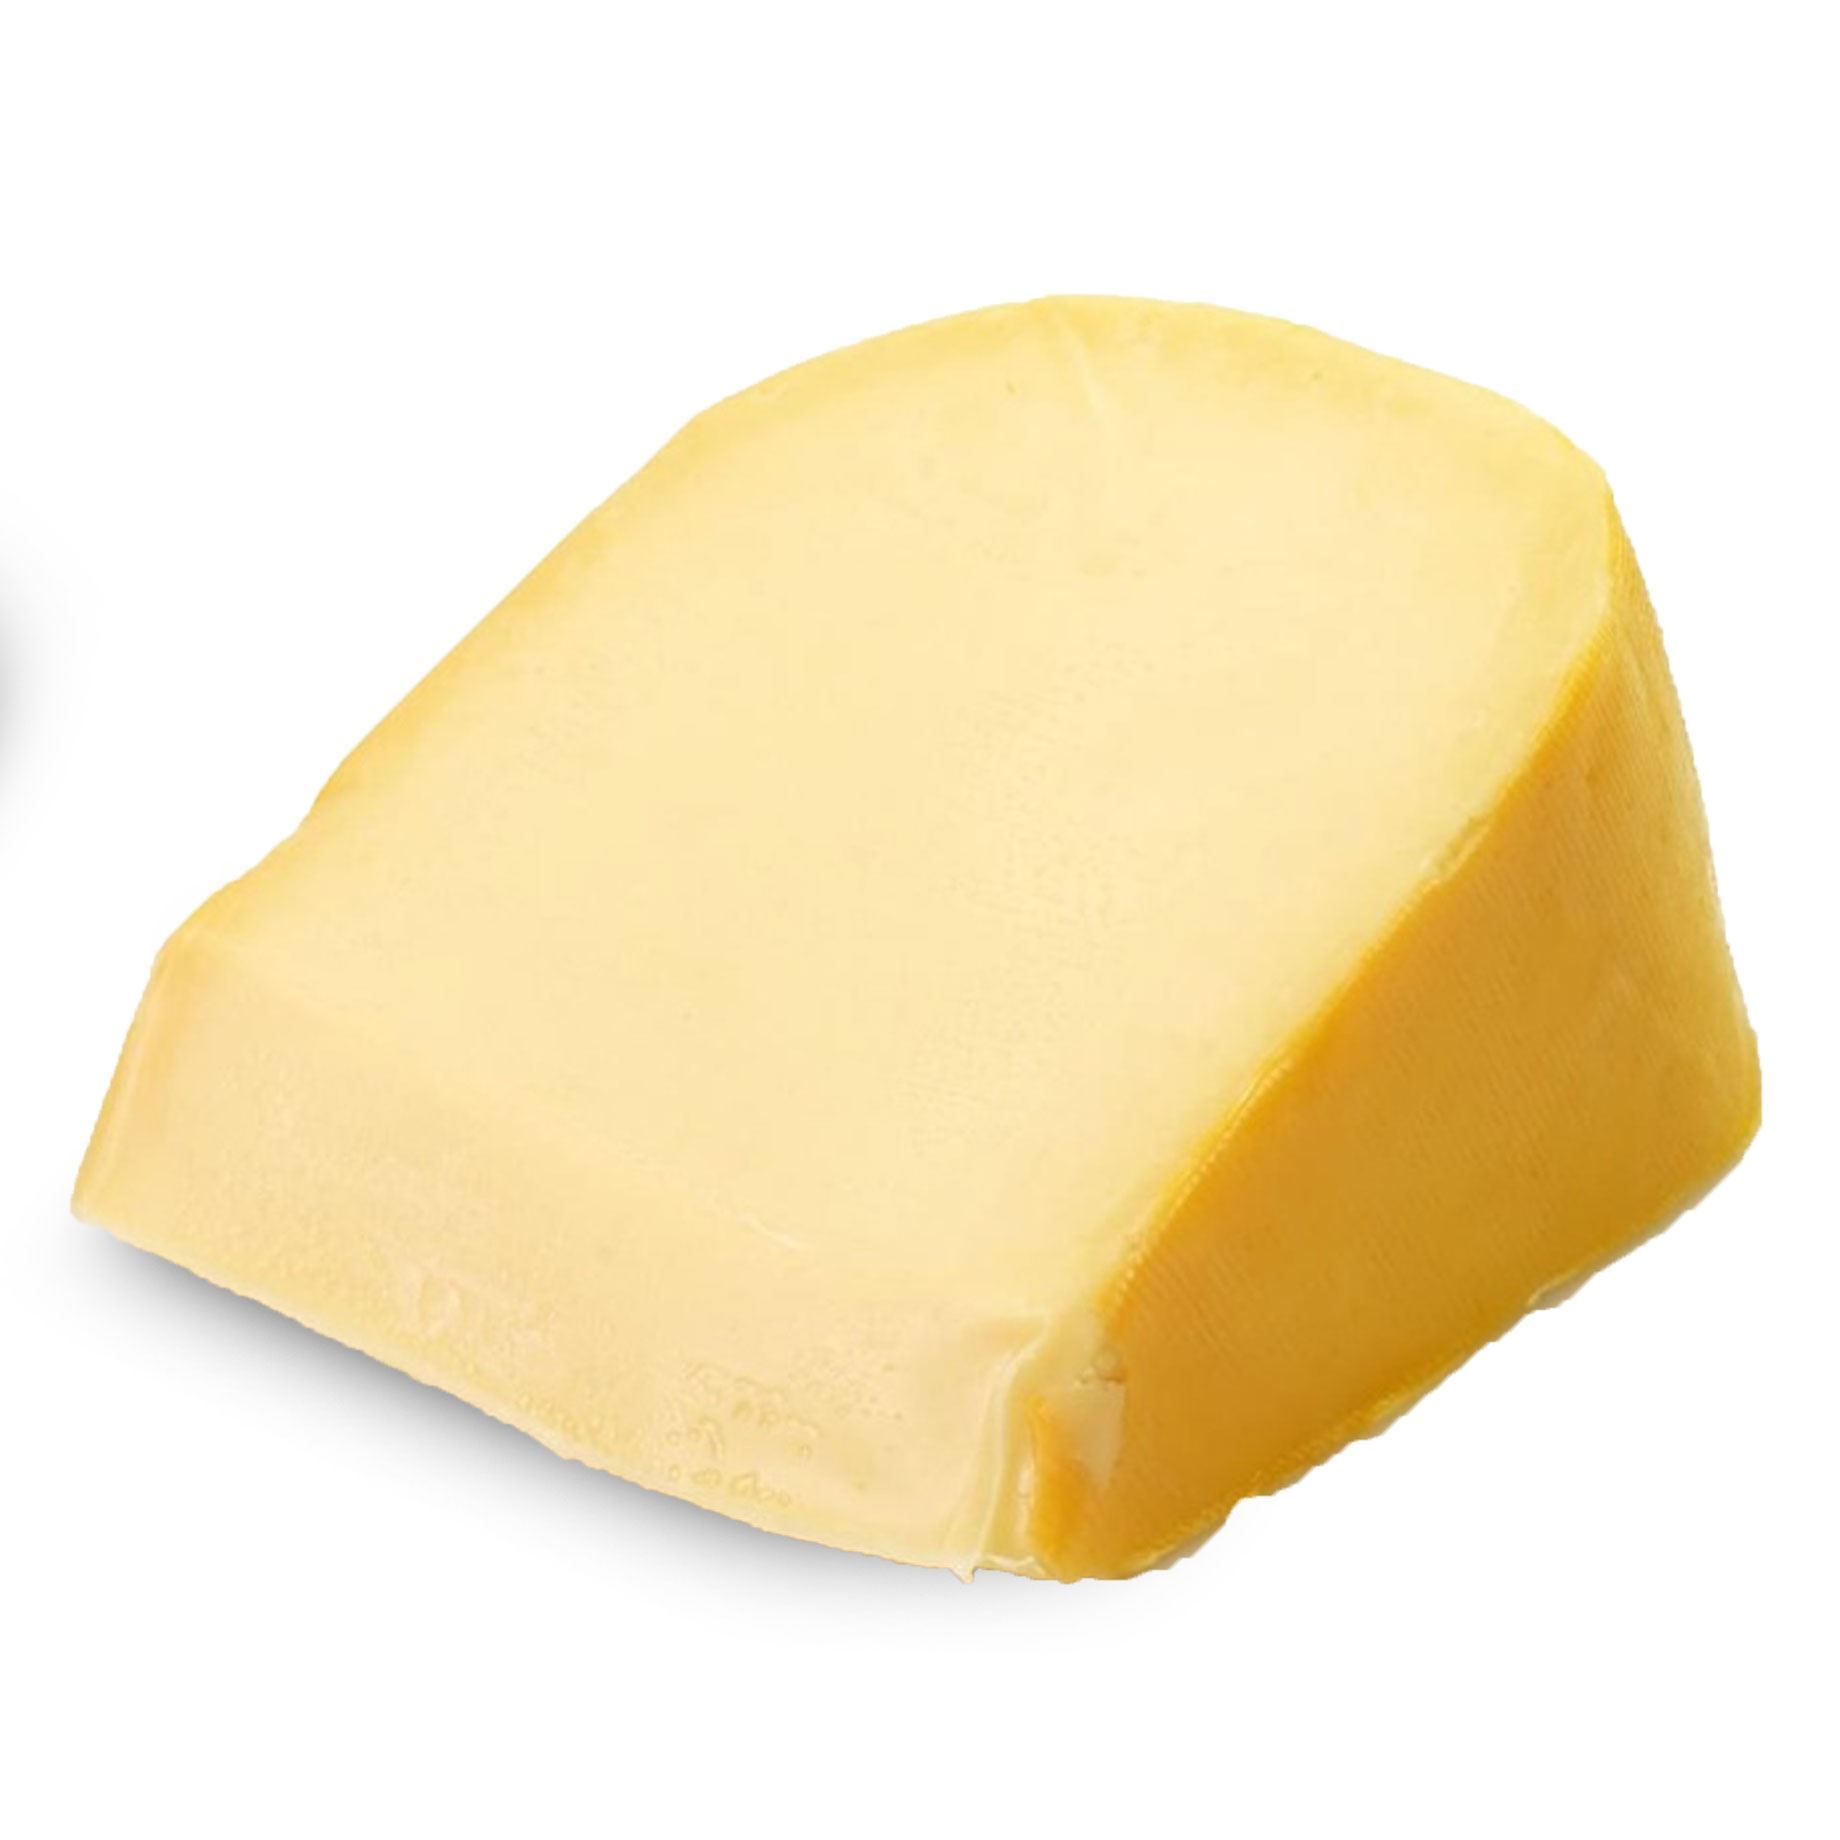 Dutch gouda cheese photo